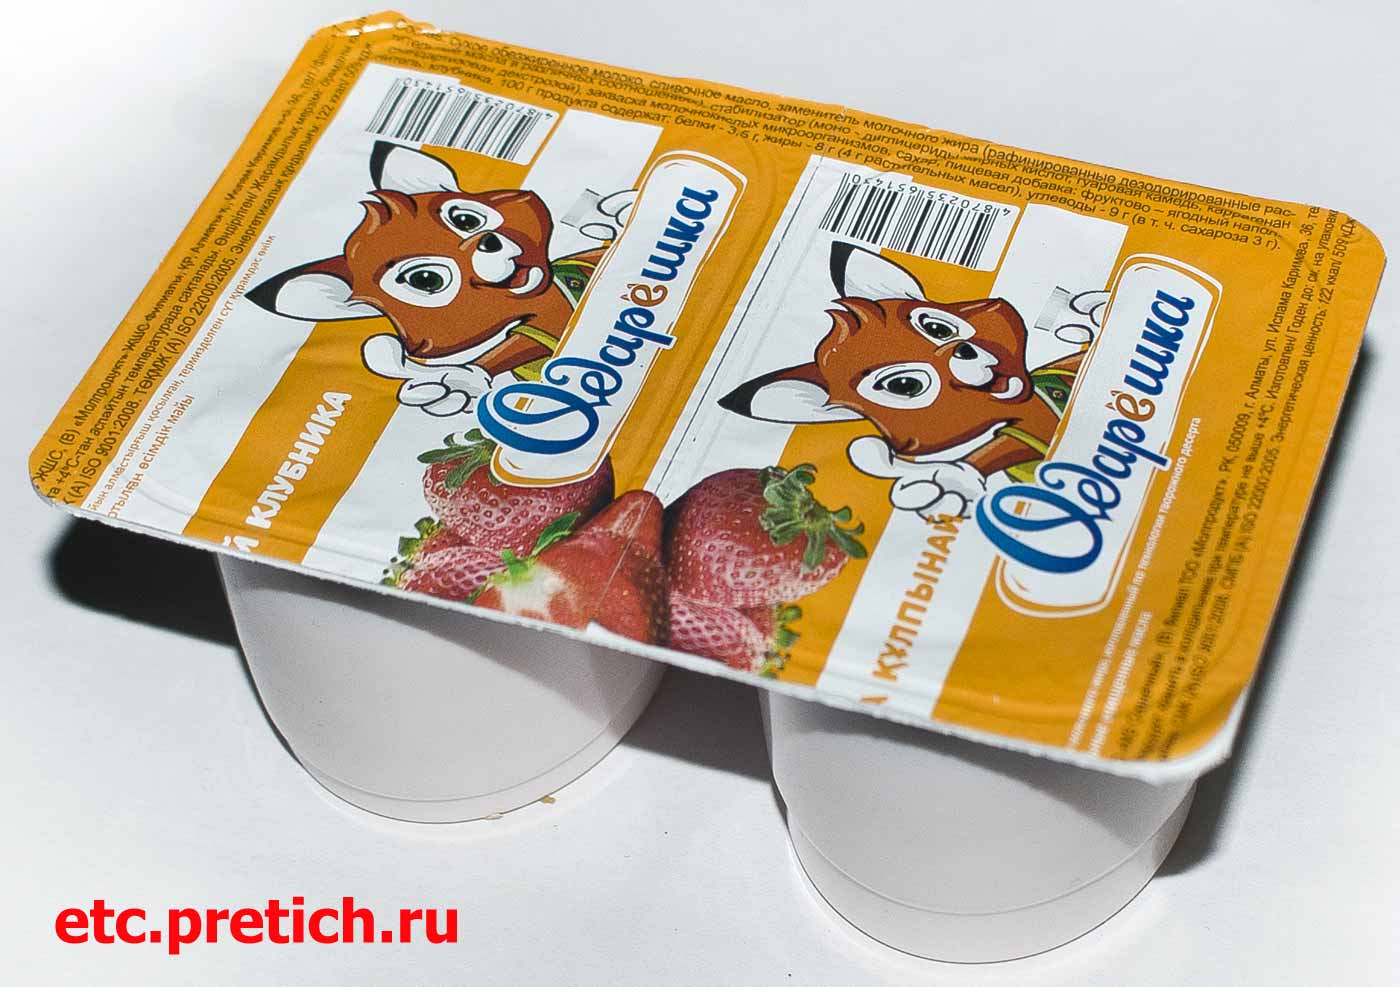 Одарёшка йогурт с клубникой отзыв на продукцию из Казахстана